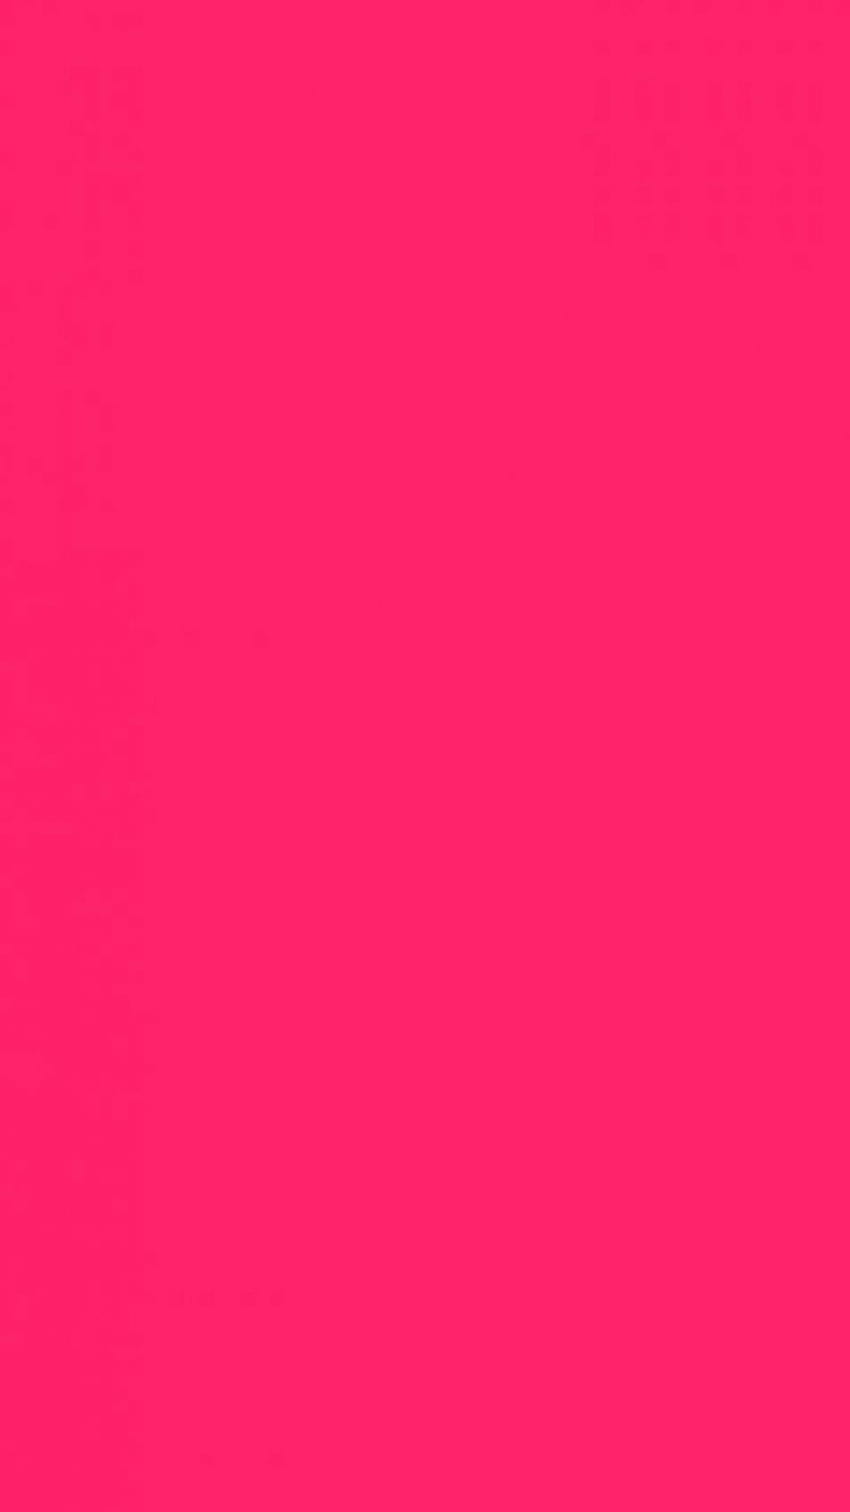 17990 rosa fucsia, rosa, fucsia fondo de pantalla del teléfono